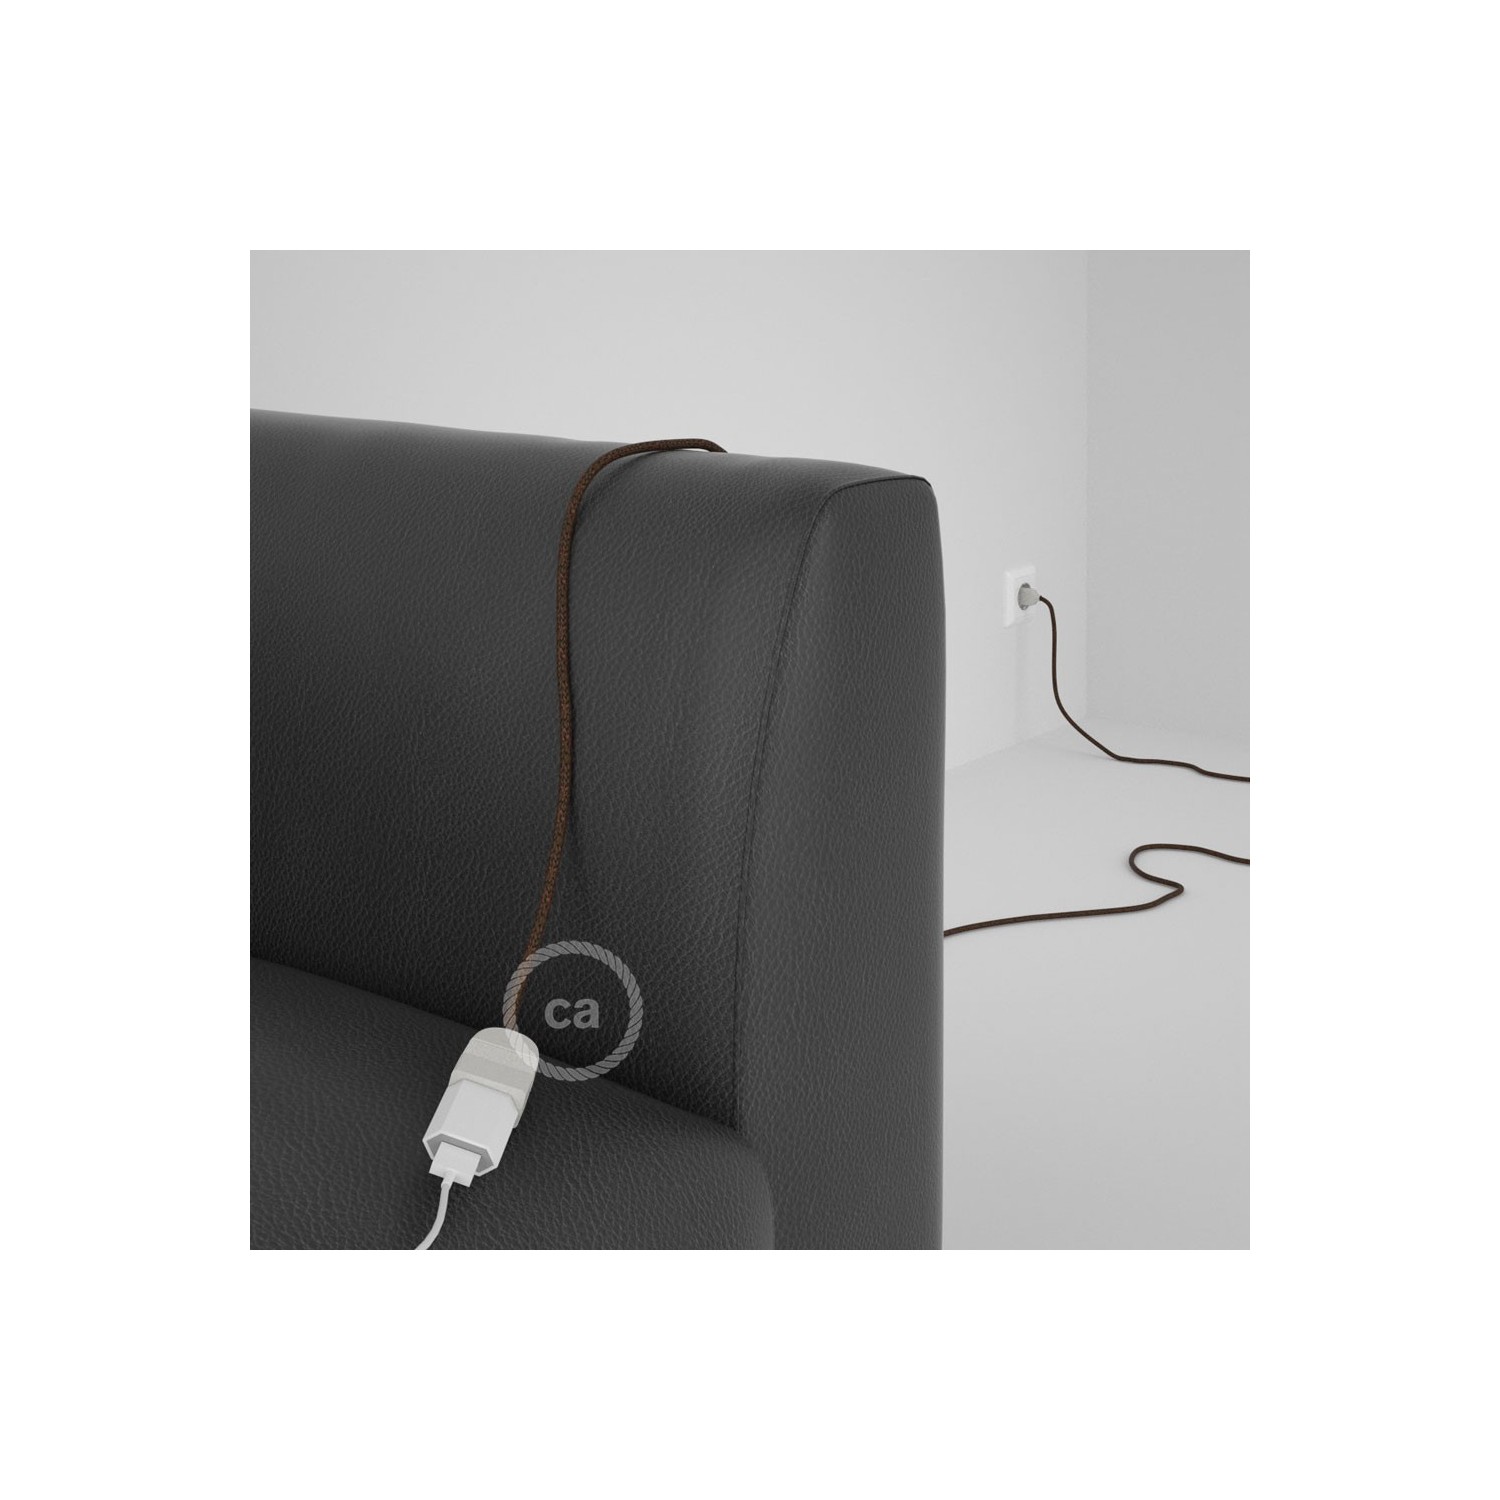 Rallonge électrique avec câble textile RL13 Effet Soie Paillettes Marron 2P 10A Made in Italy.